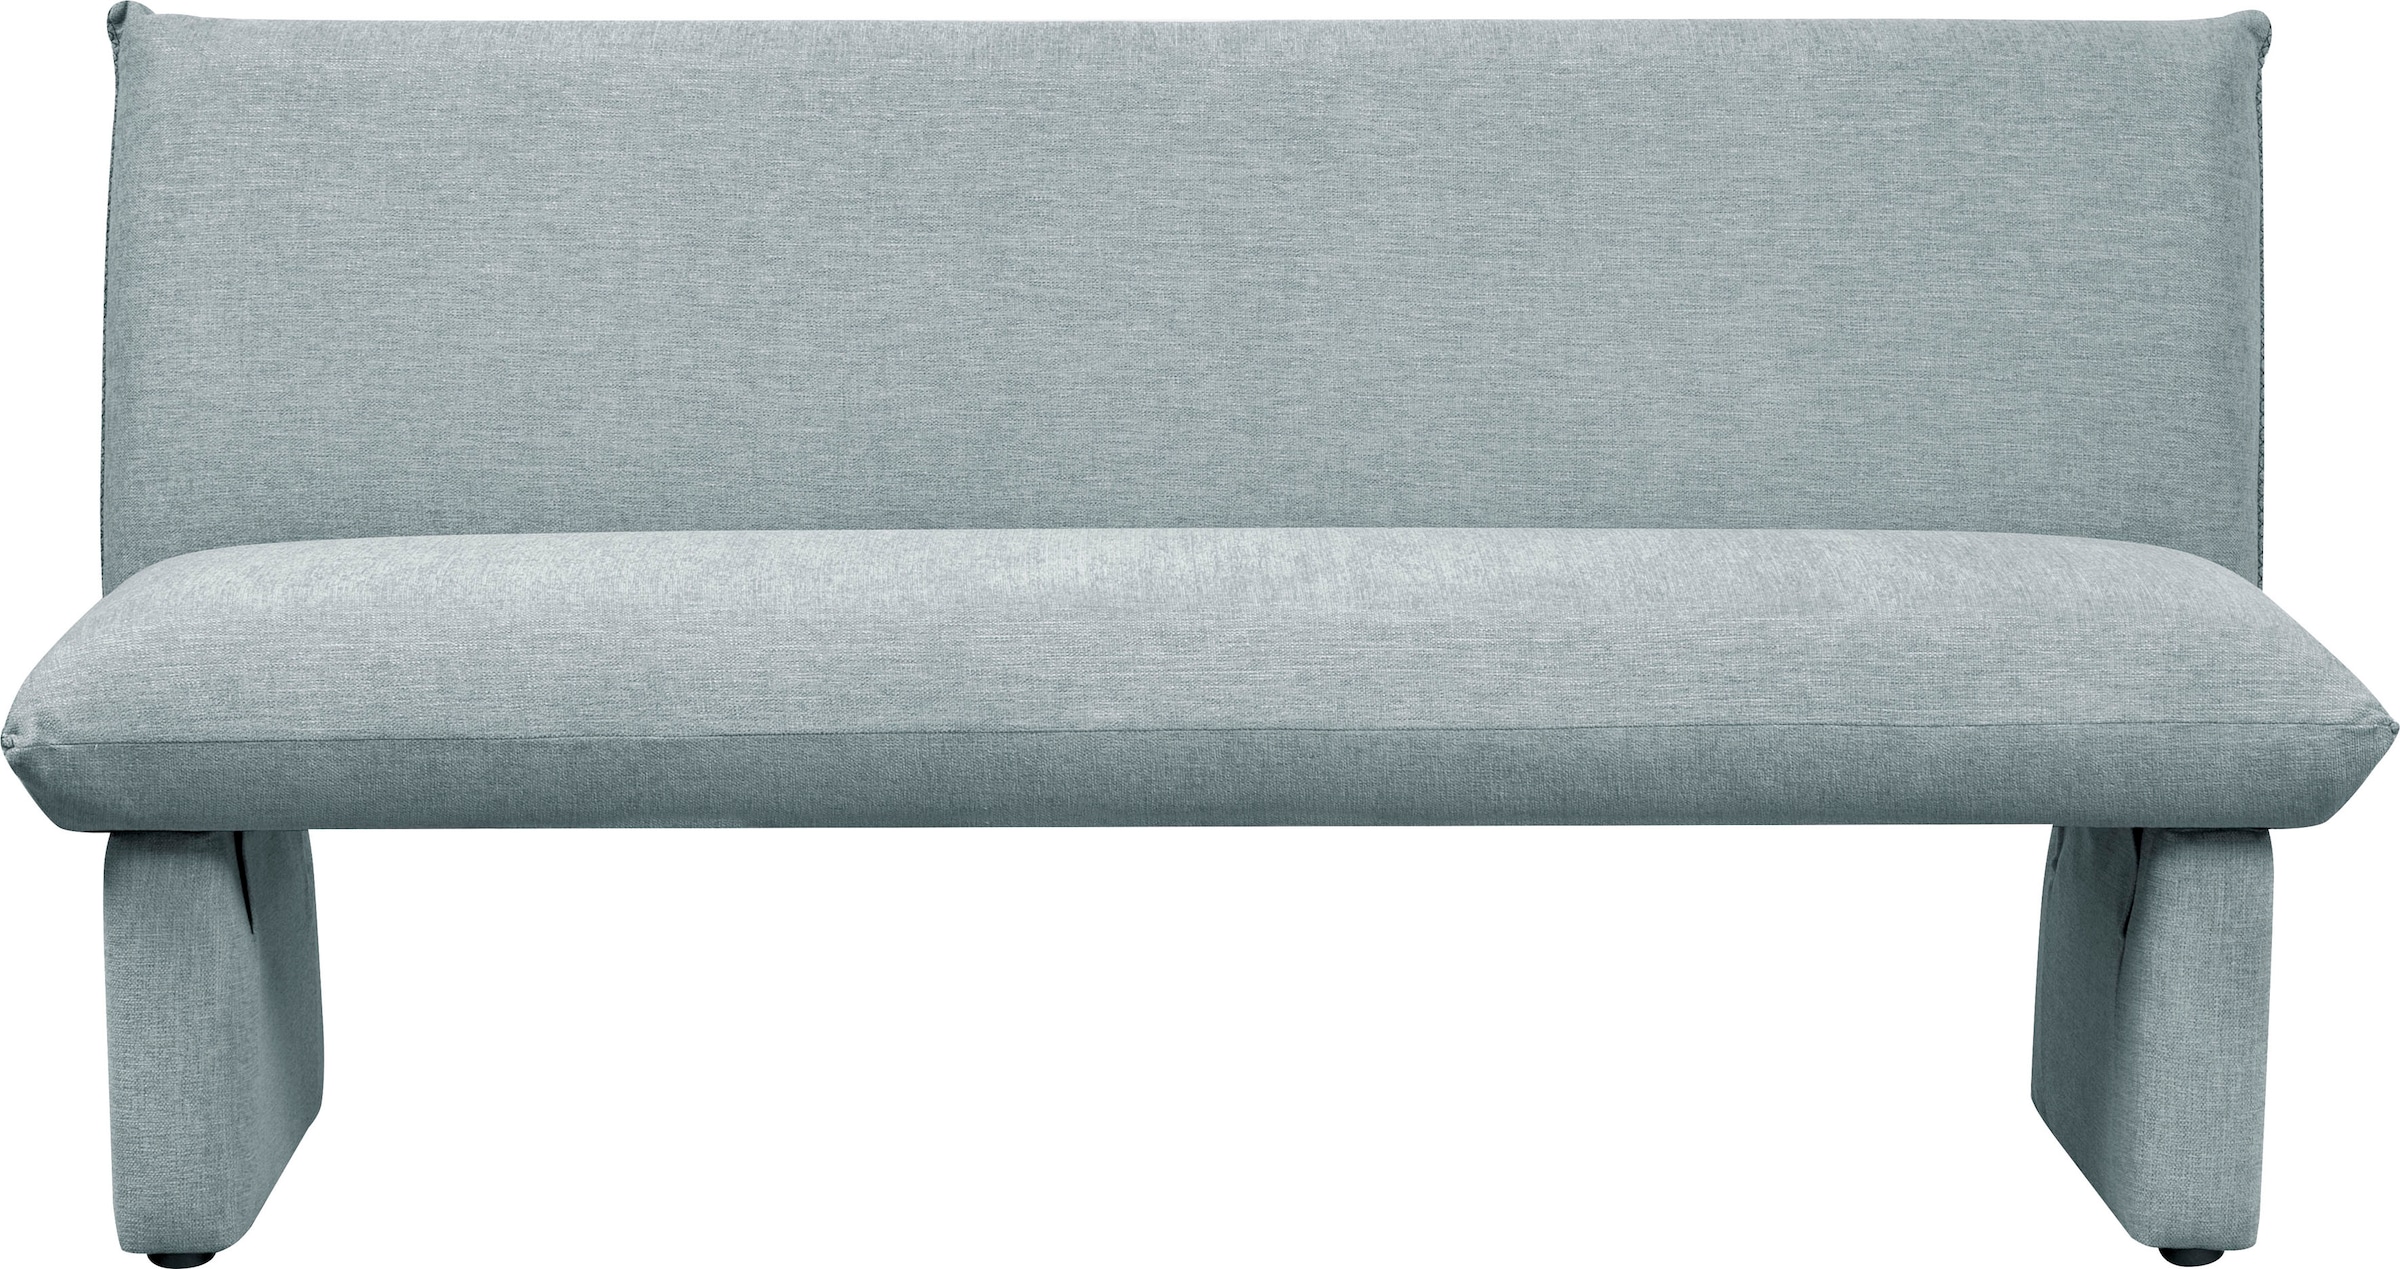 Home affaire Sitzbank "London", Breite 169 cm, mit Wellenunterfederung im Sitz